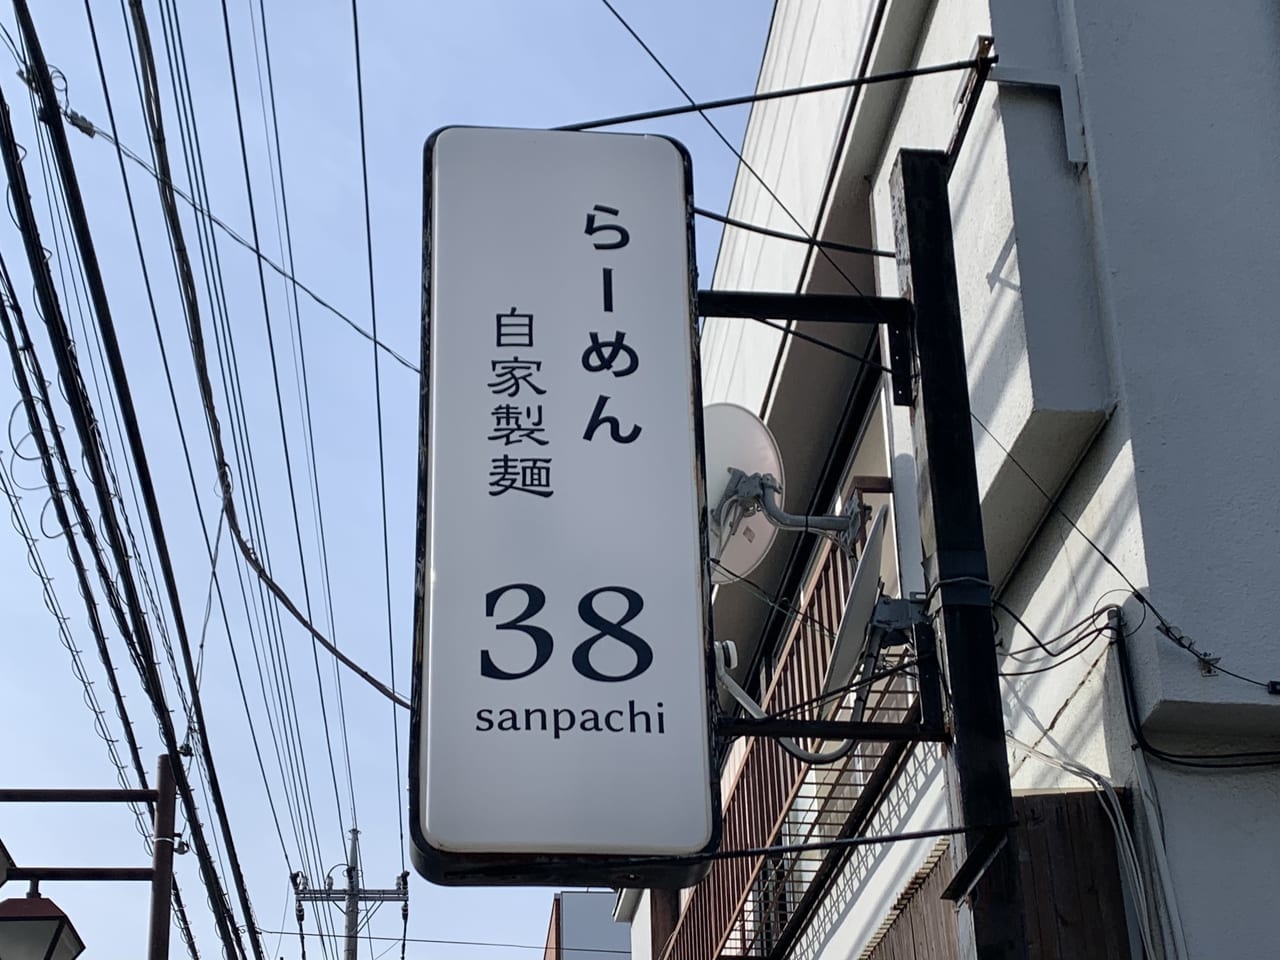 38sanpachi